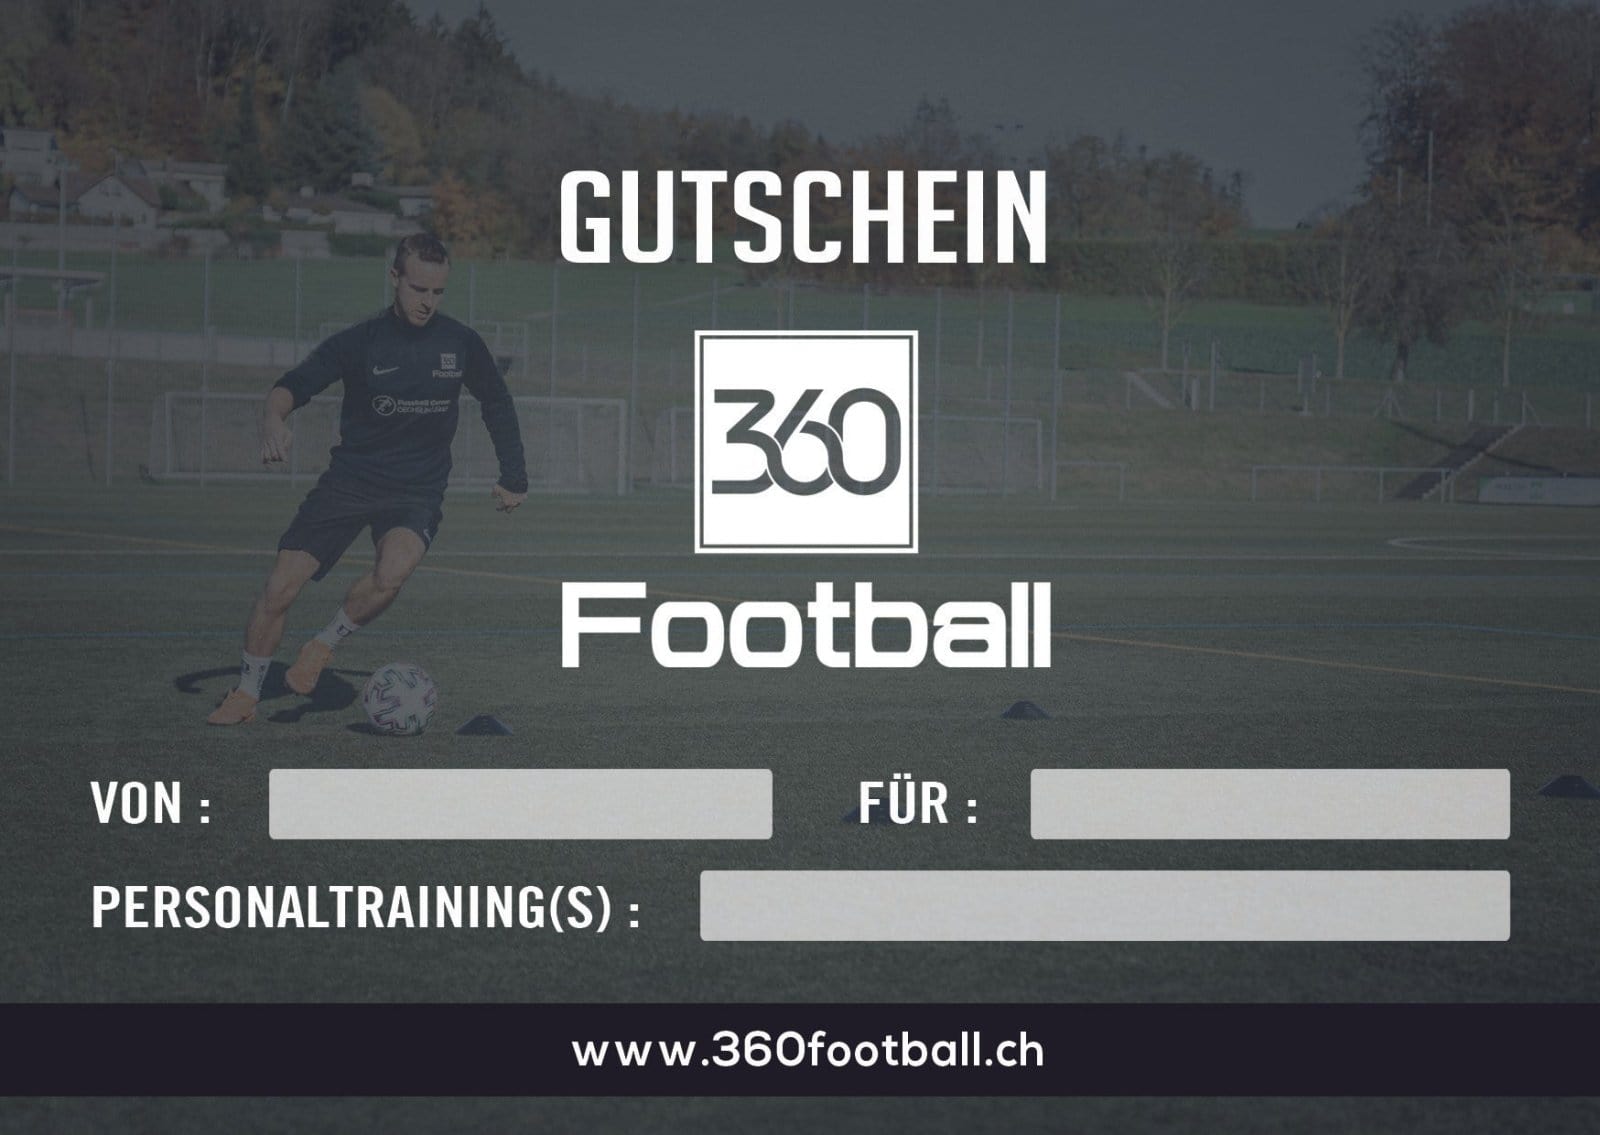 360Football Gutschein Personaltraining